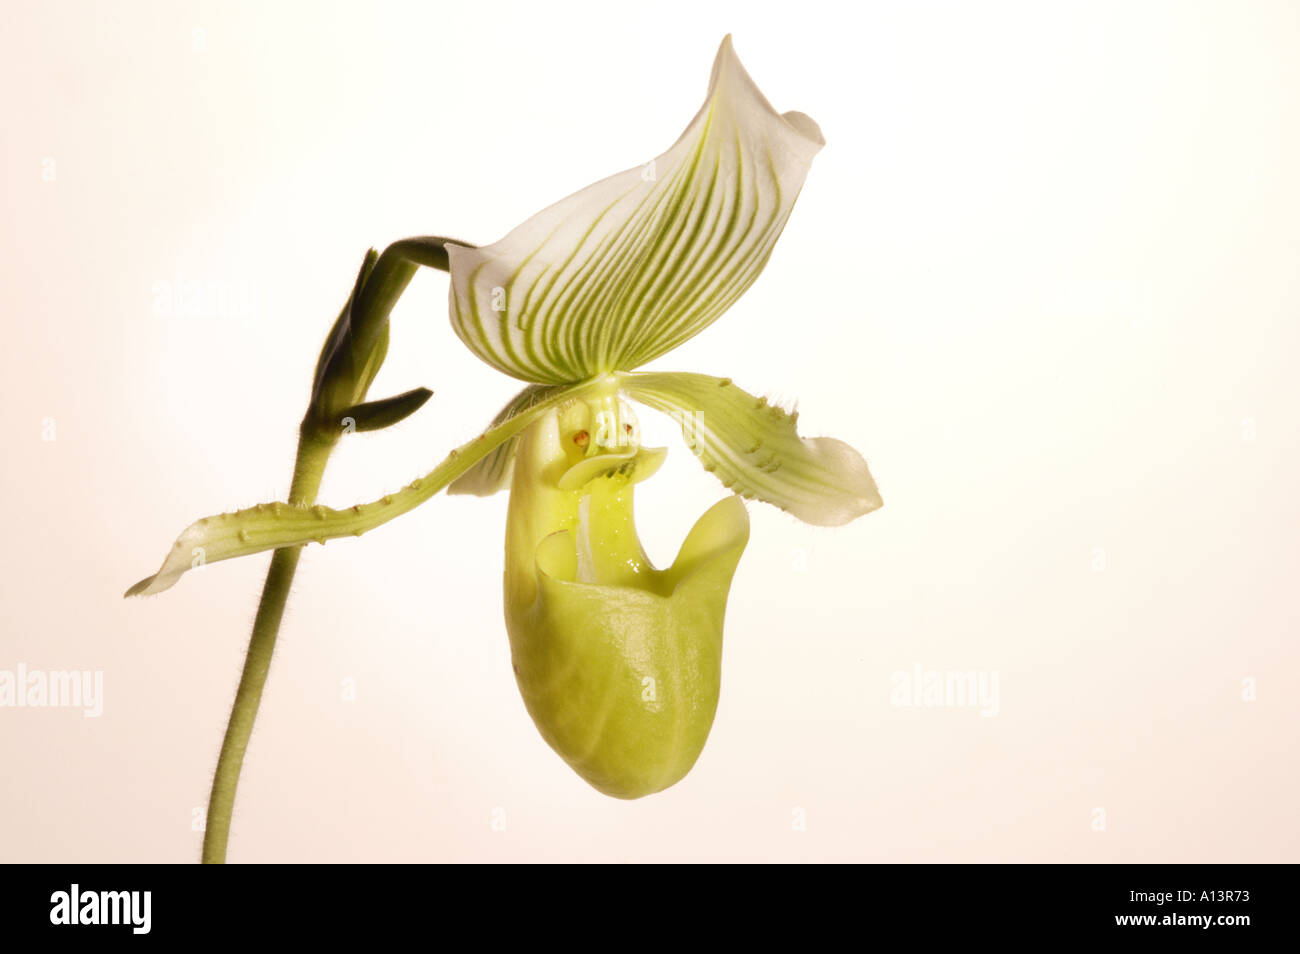 Paph paphiopedilum orchid fotografías e imágenes de alta resolución -  Página 2 - Alamy